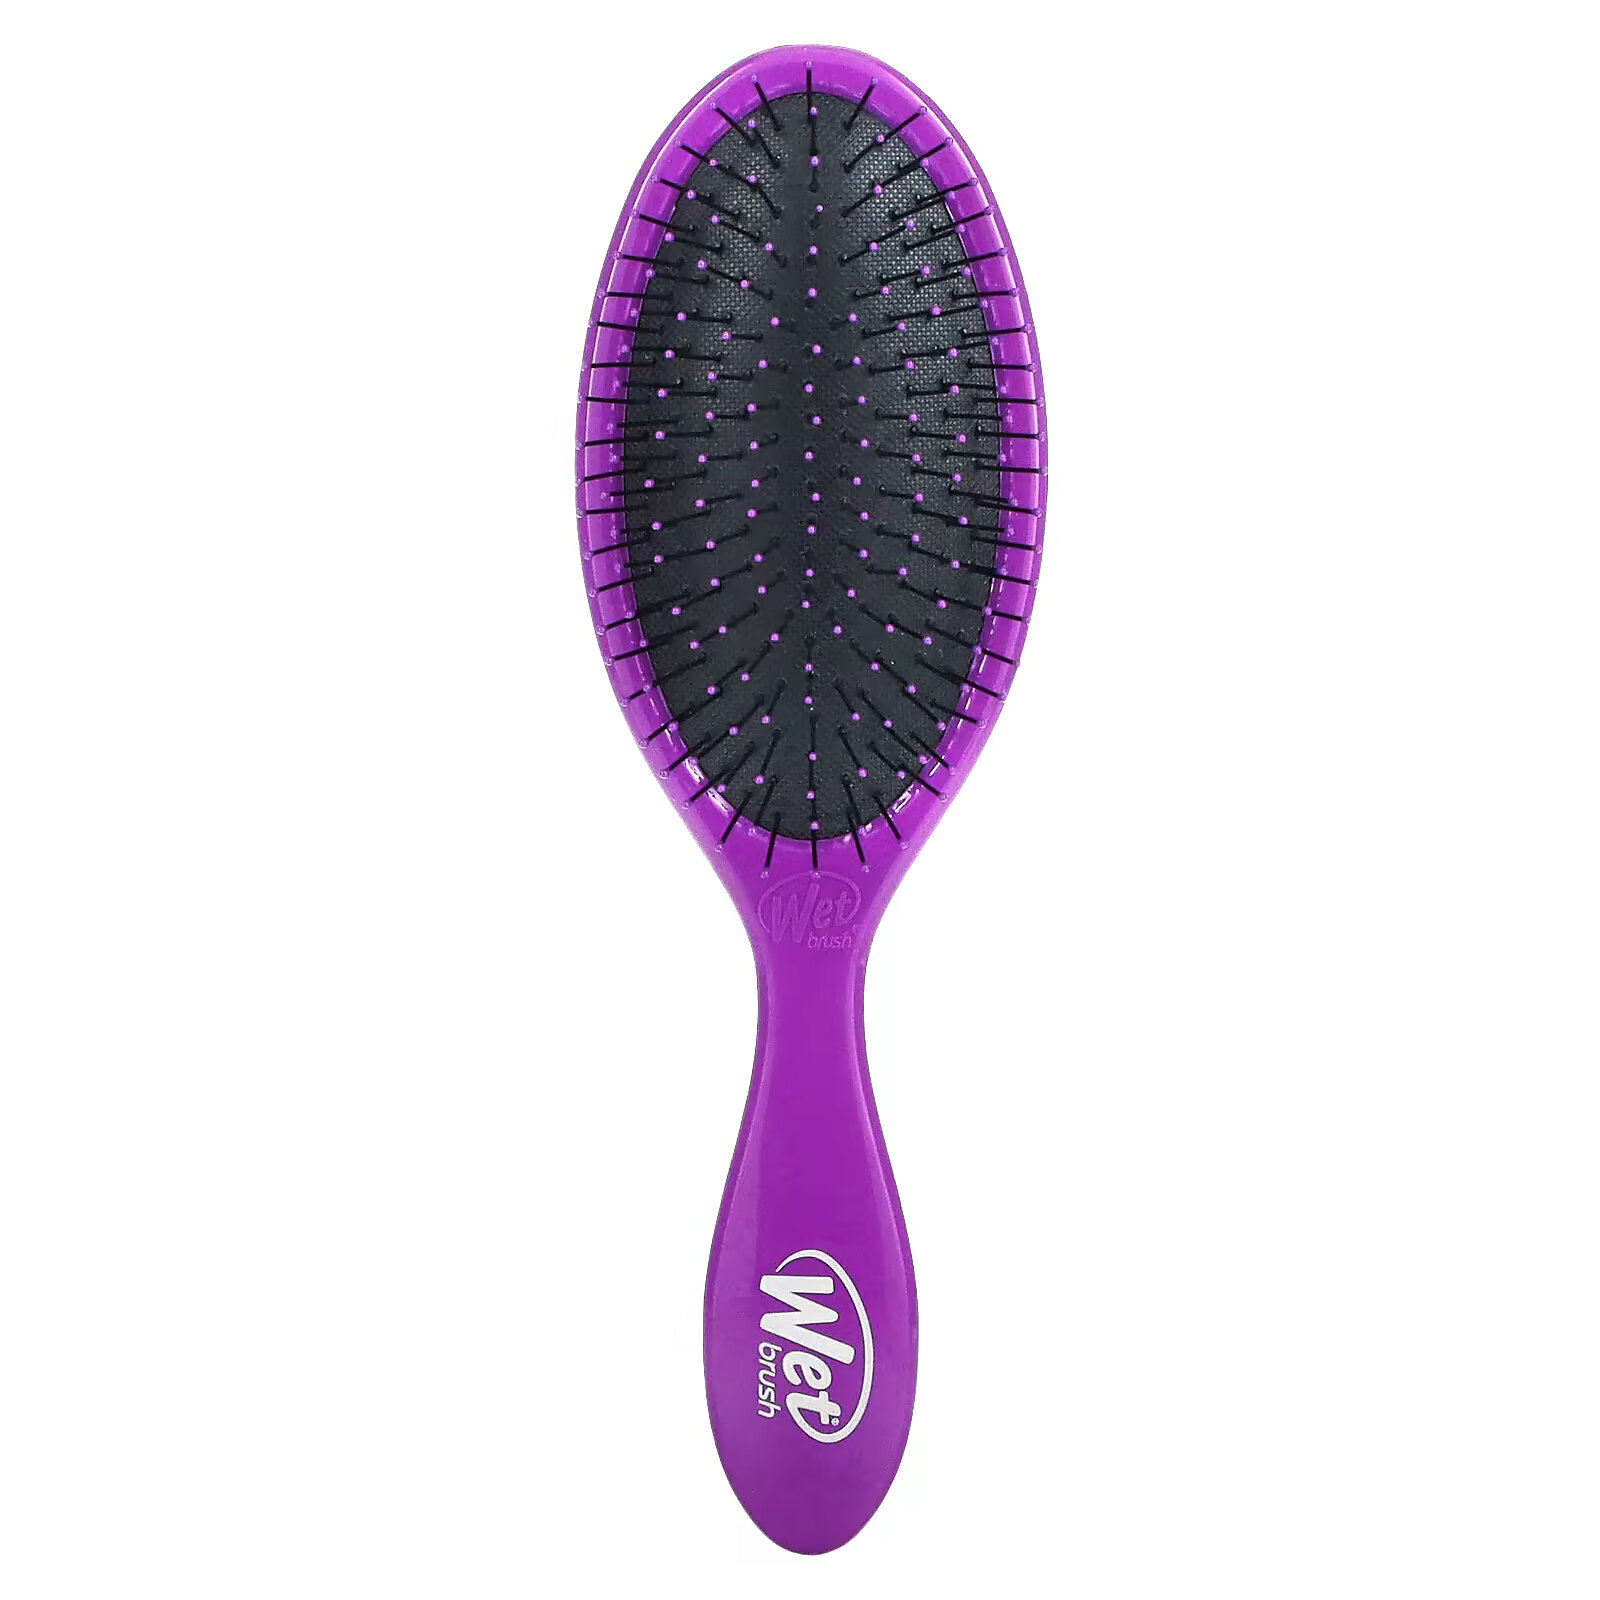 Wet Brush, Щетка для распутывания волос Original Detangler Brush, фиолетовая, 1 шт. wet brush щетка для распутывания волос original detangler brush фиолетовая 1 шт